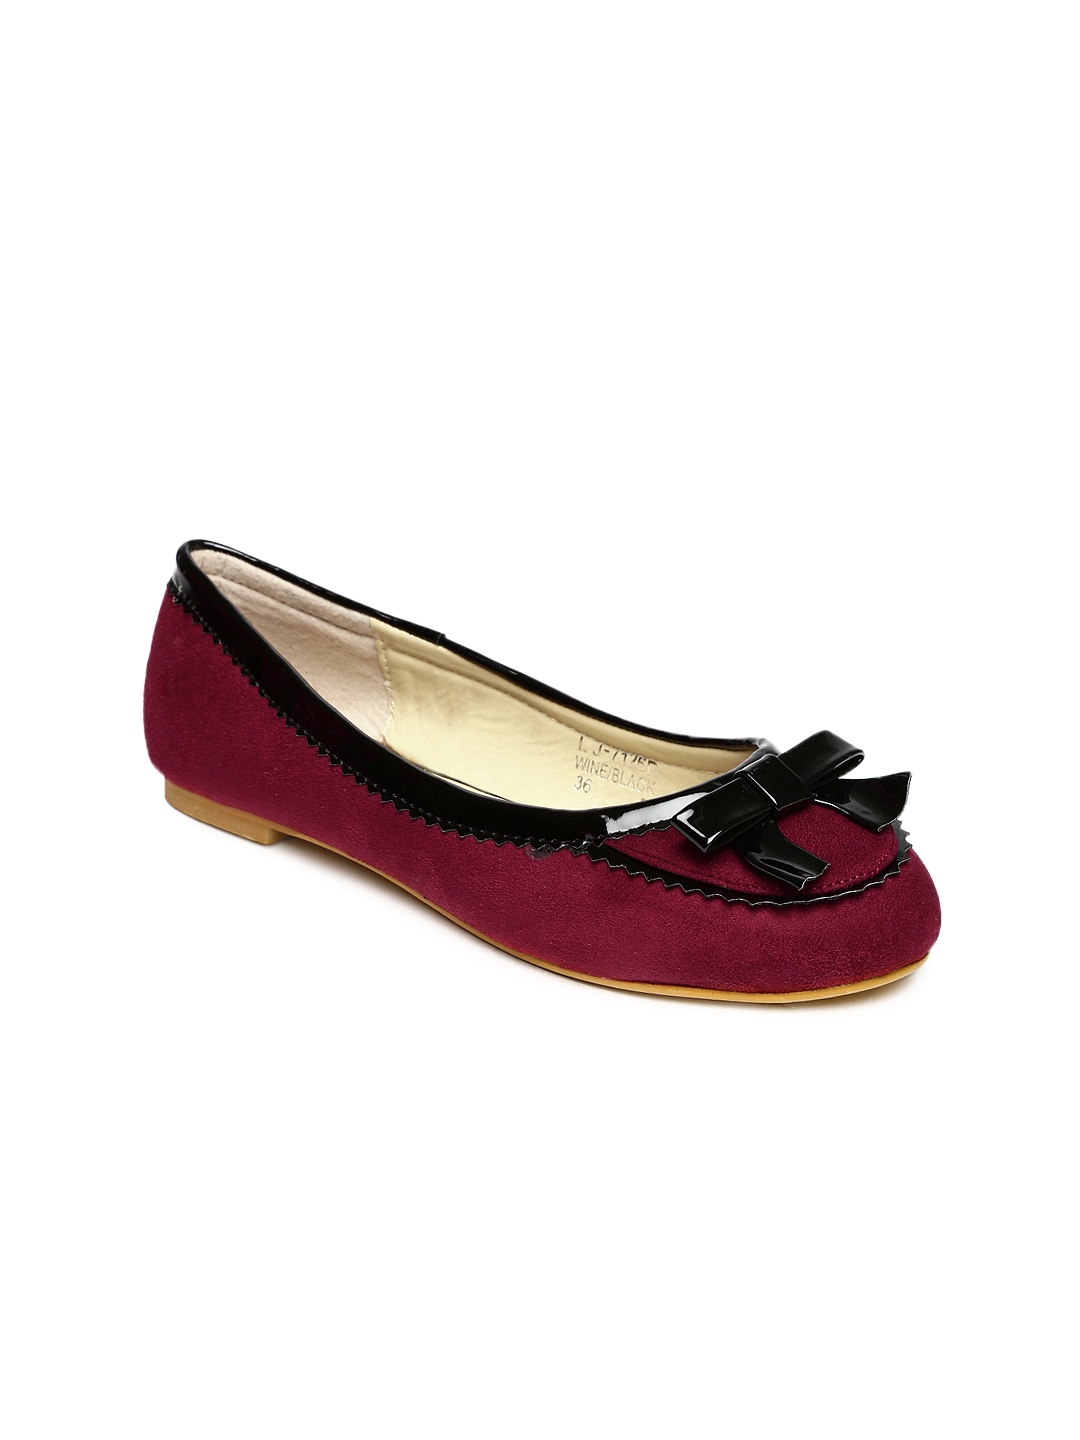 Myntra DressBerry Women Maroon Flat Shoes 751440 | Buy Myntra ...